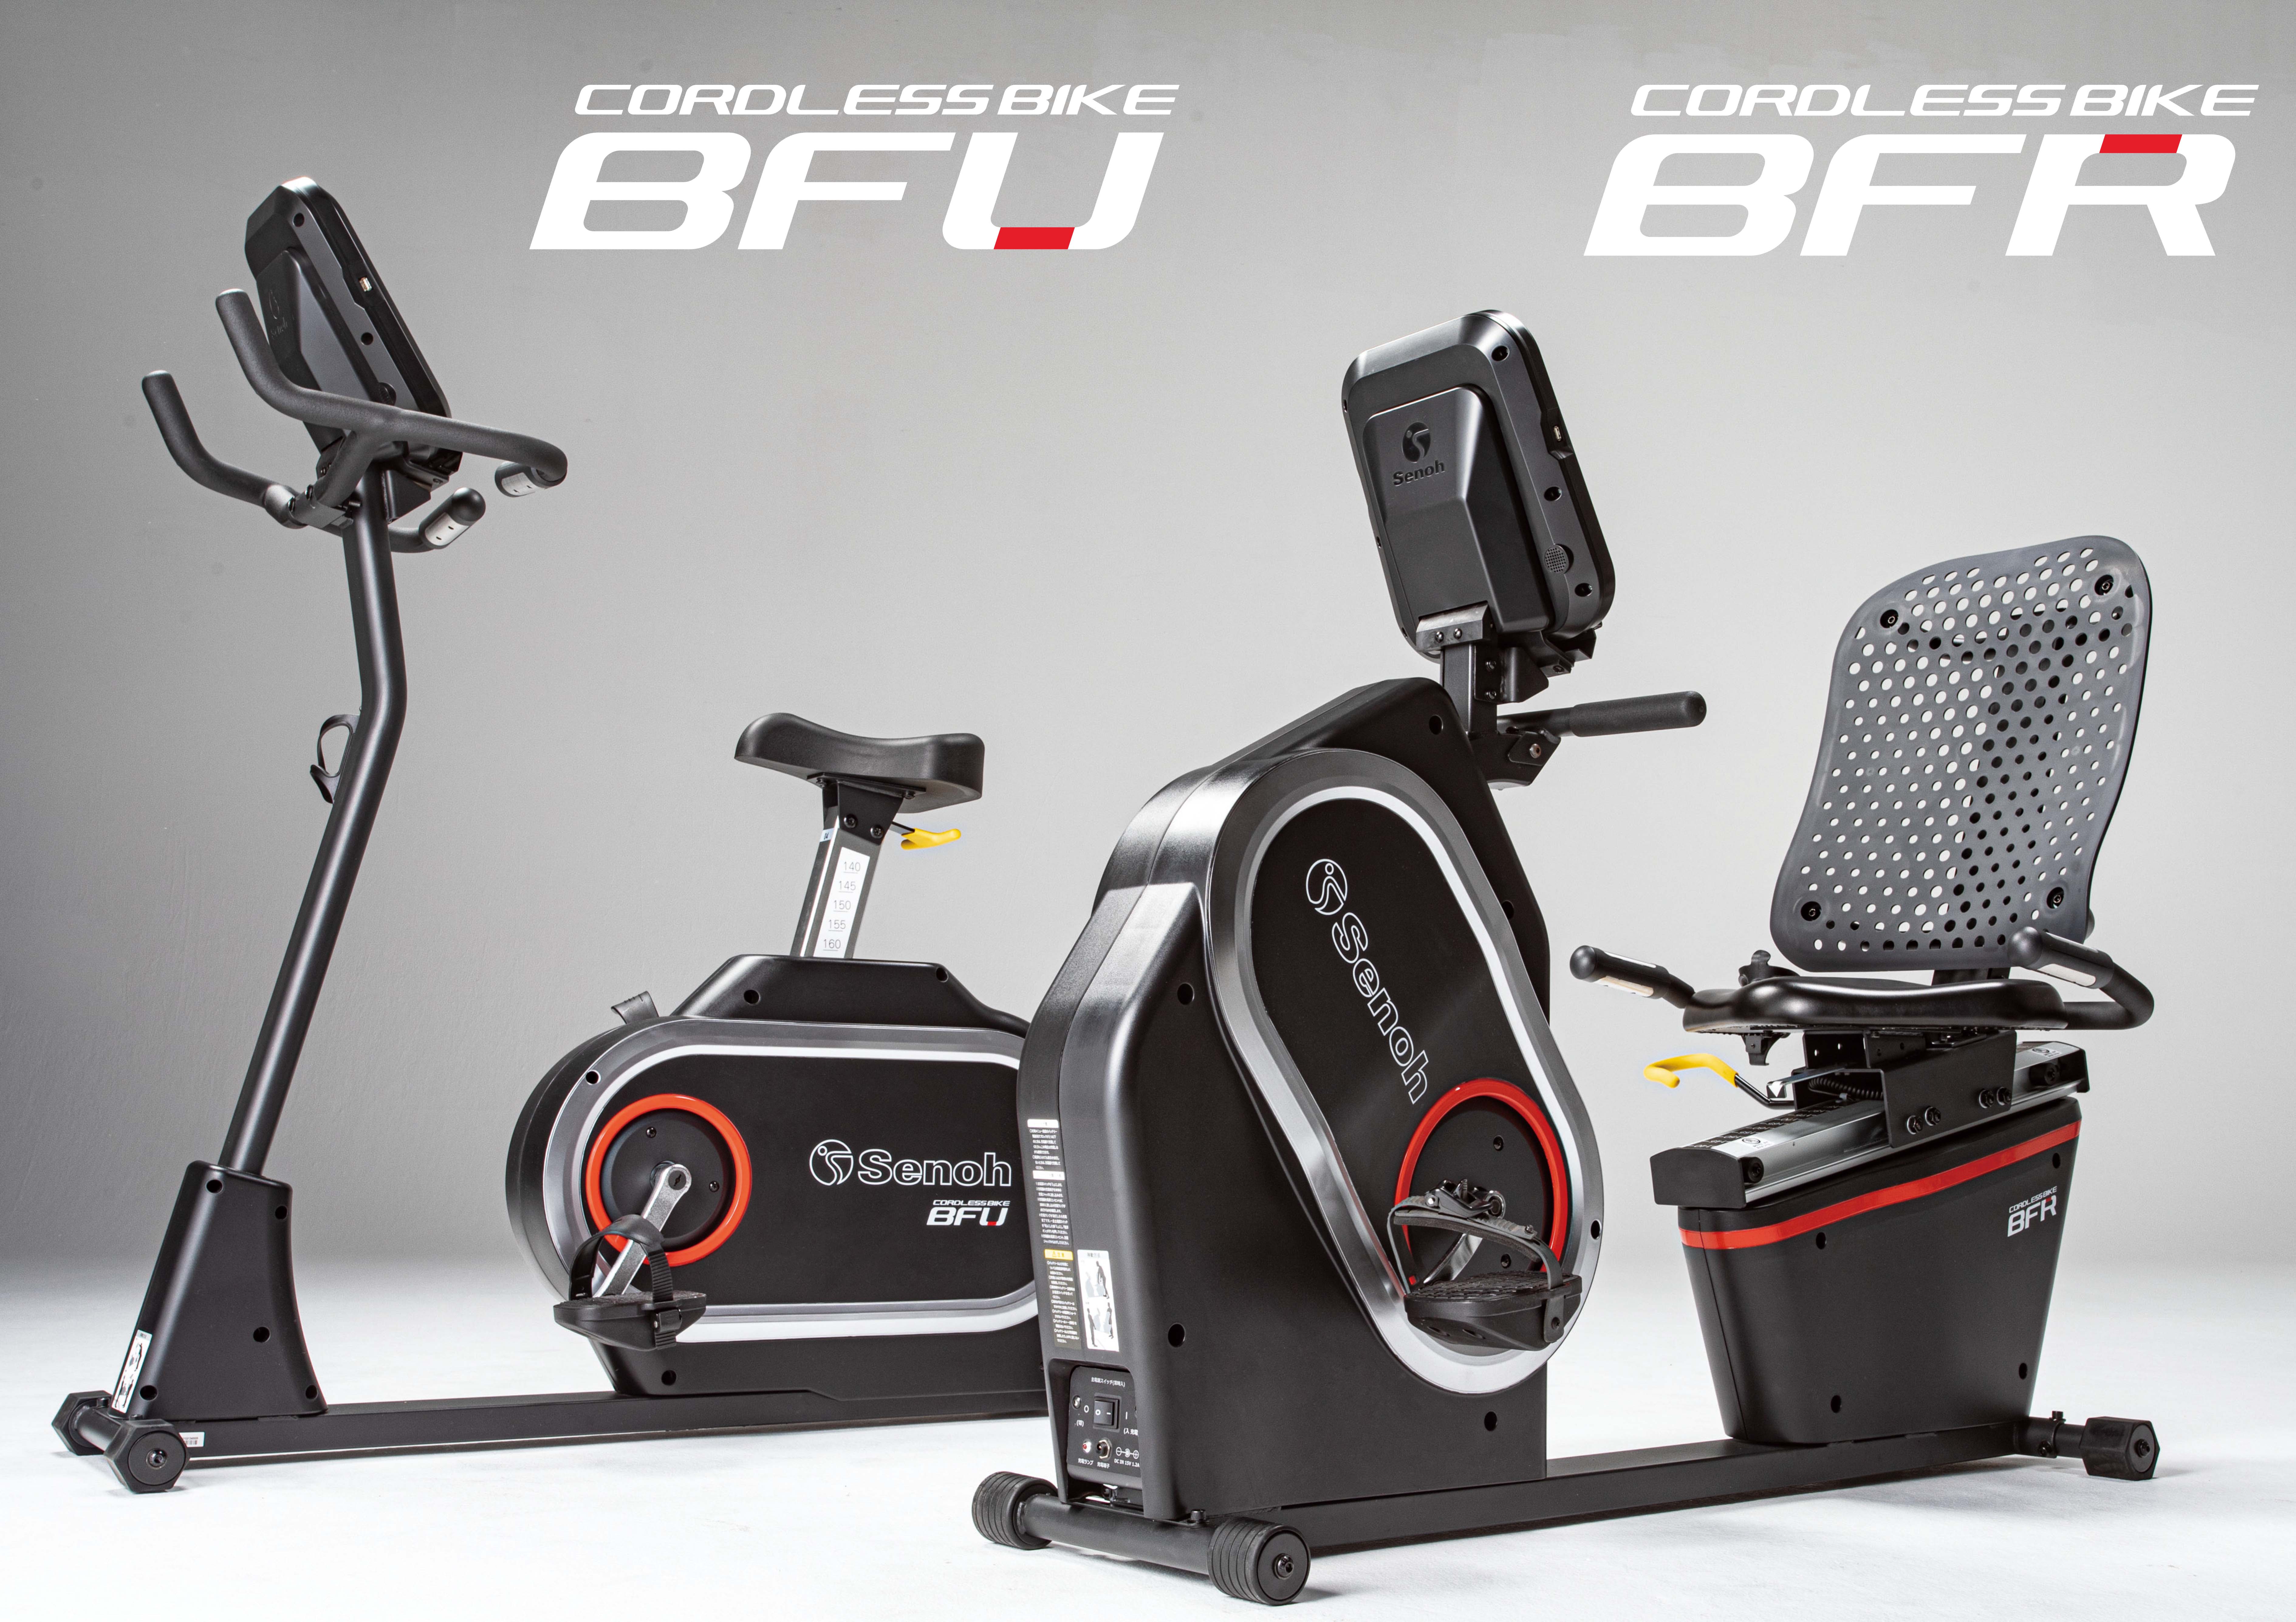 コードレスバイクBFU/BFR』を発売しました！ | Senoh セノー株式会社